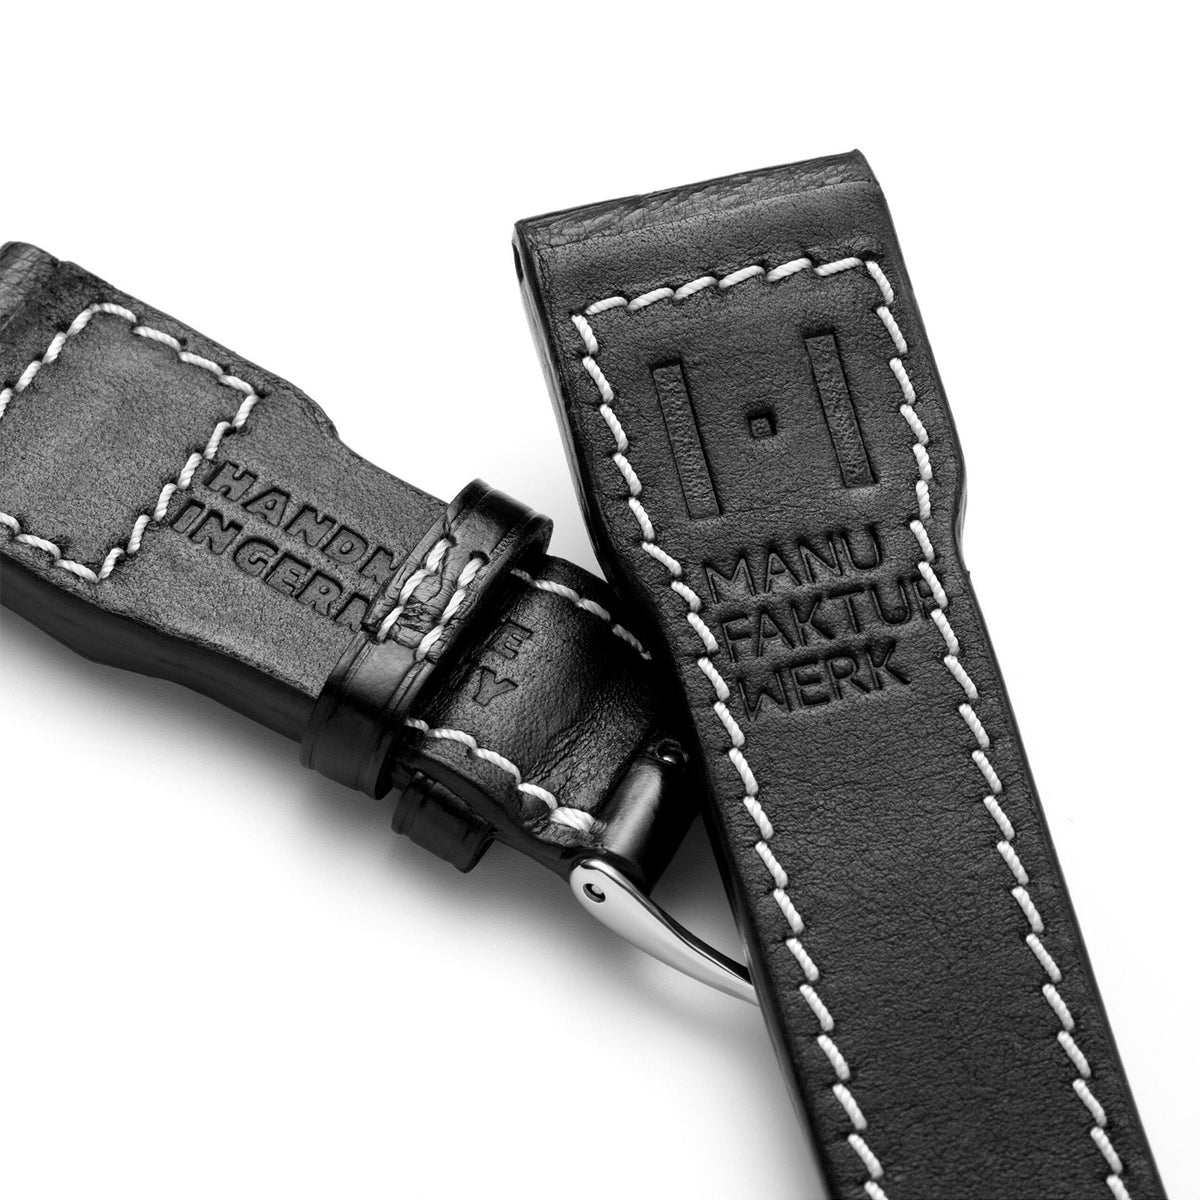 Alligator horlogeband voor groot pilotenhorloge - compatibele band voor IWC BIG PILOT (band niet van IWC) - zilverkleurige gesp